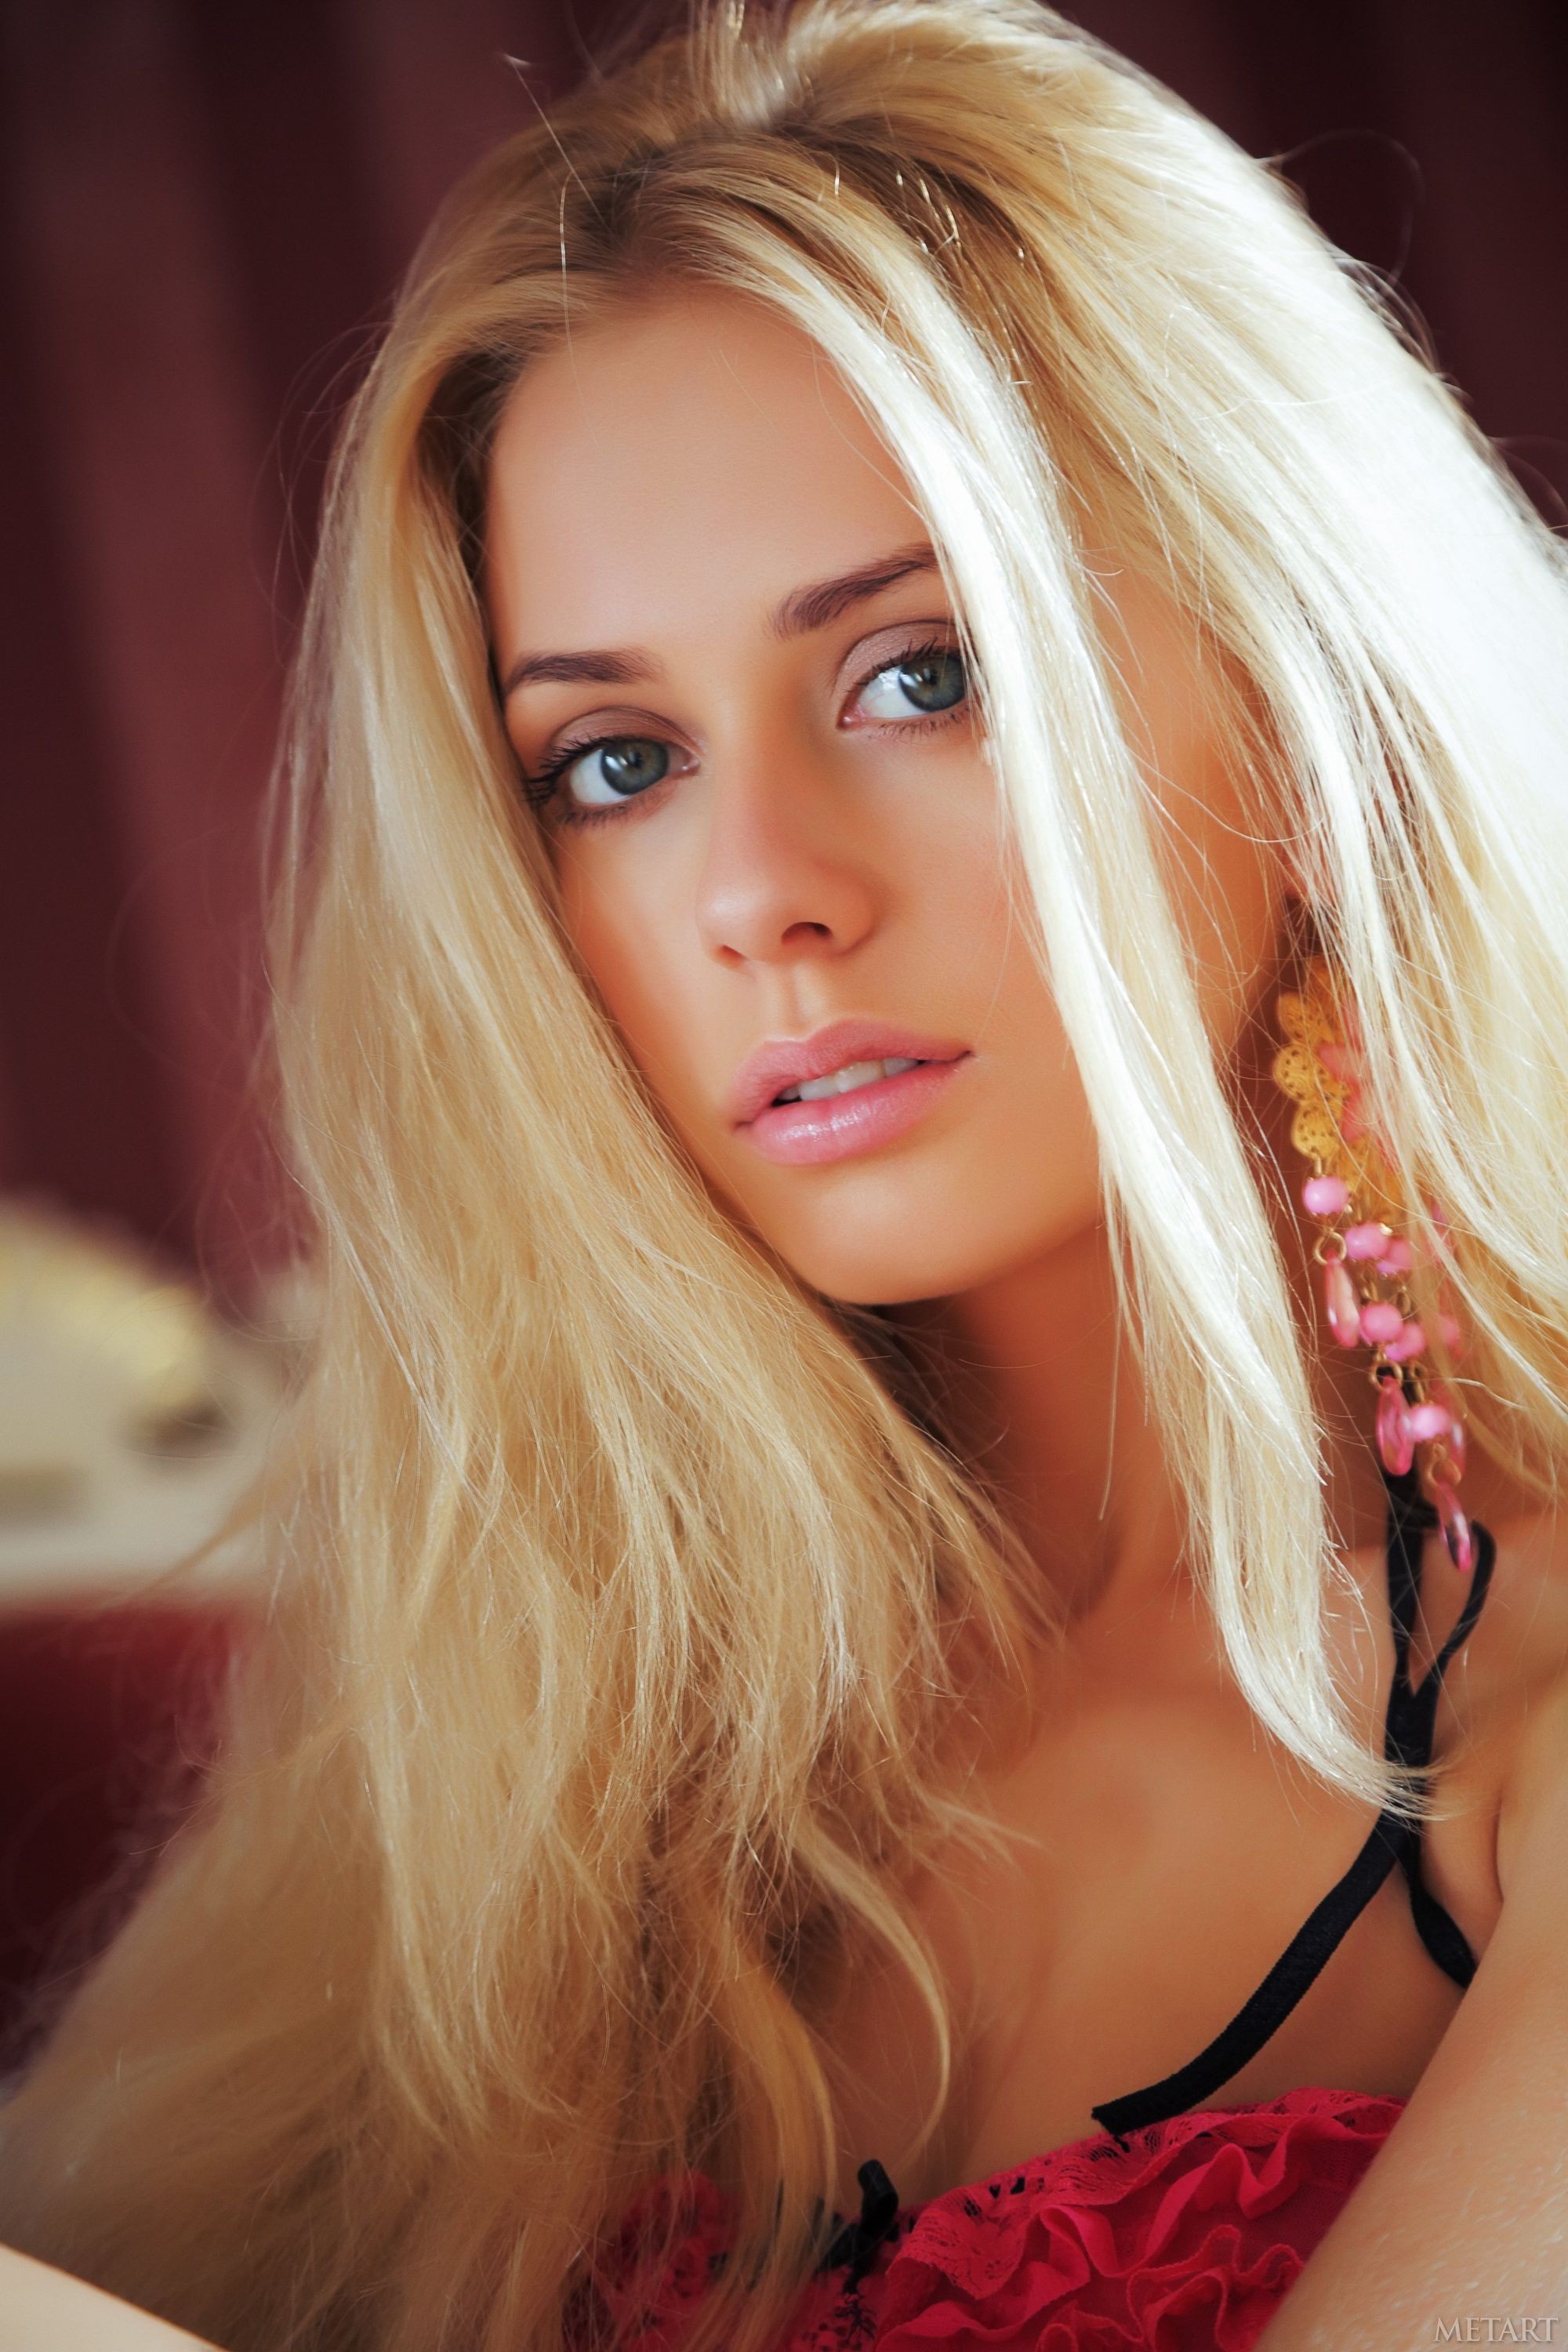 Long blonde hair ladies with blue eyes